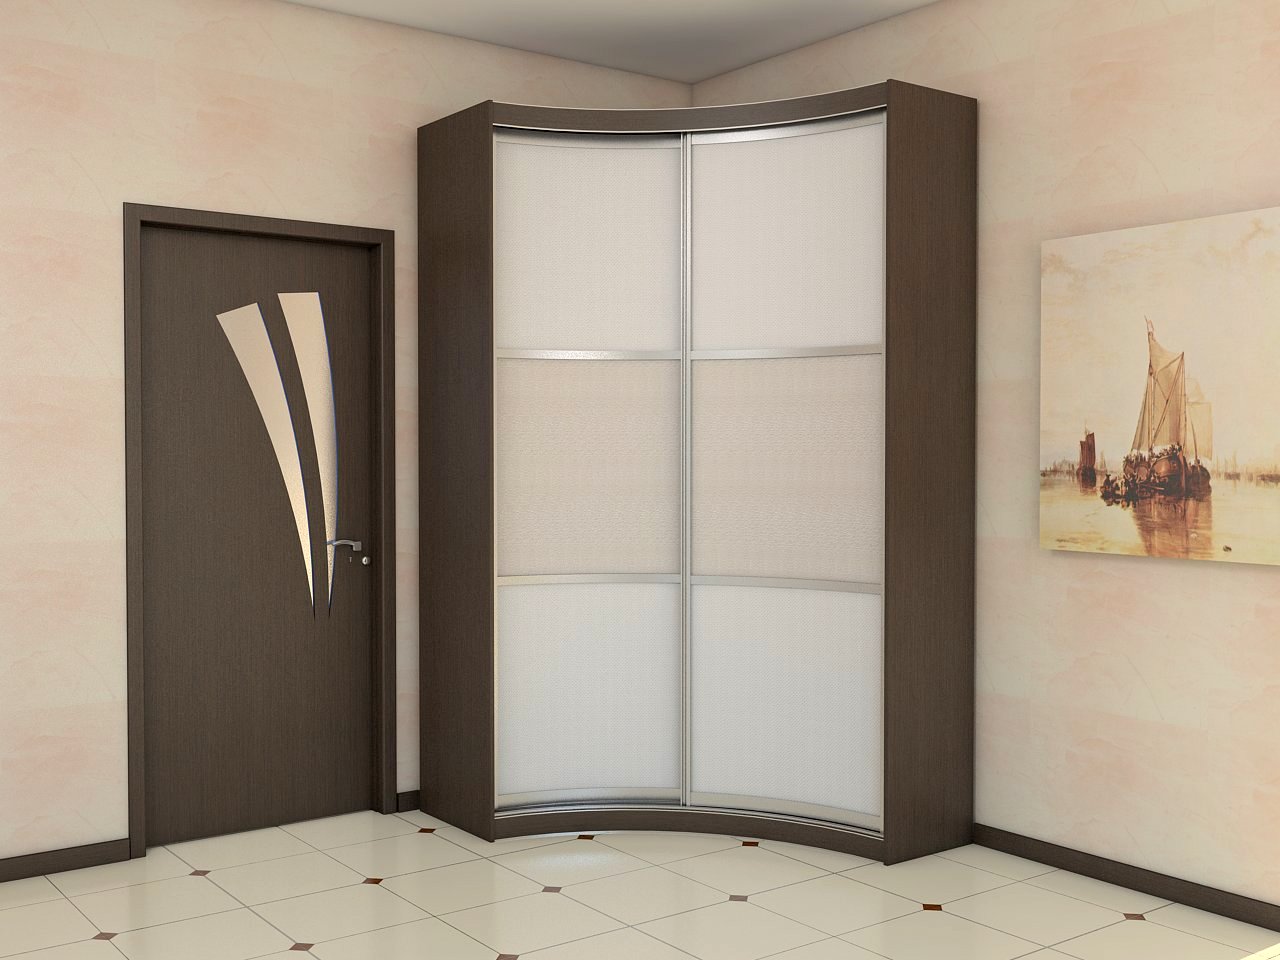 Hallway design with corner wardrobe